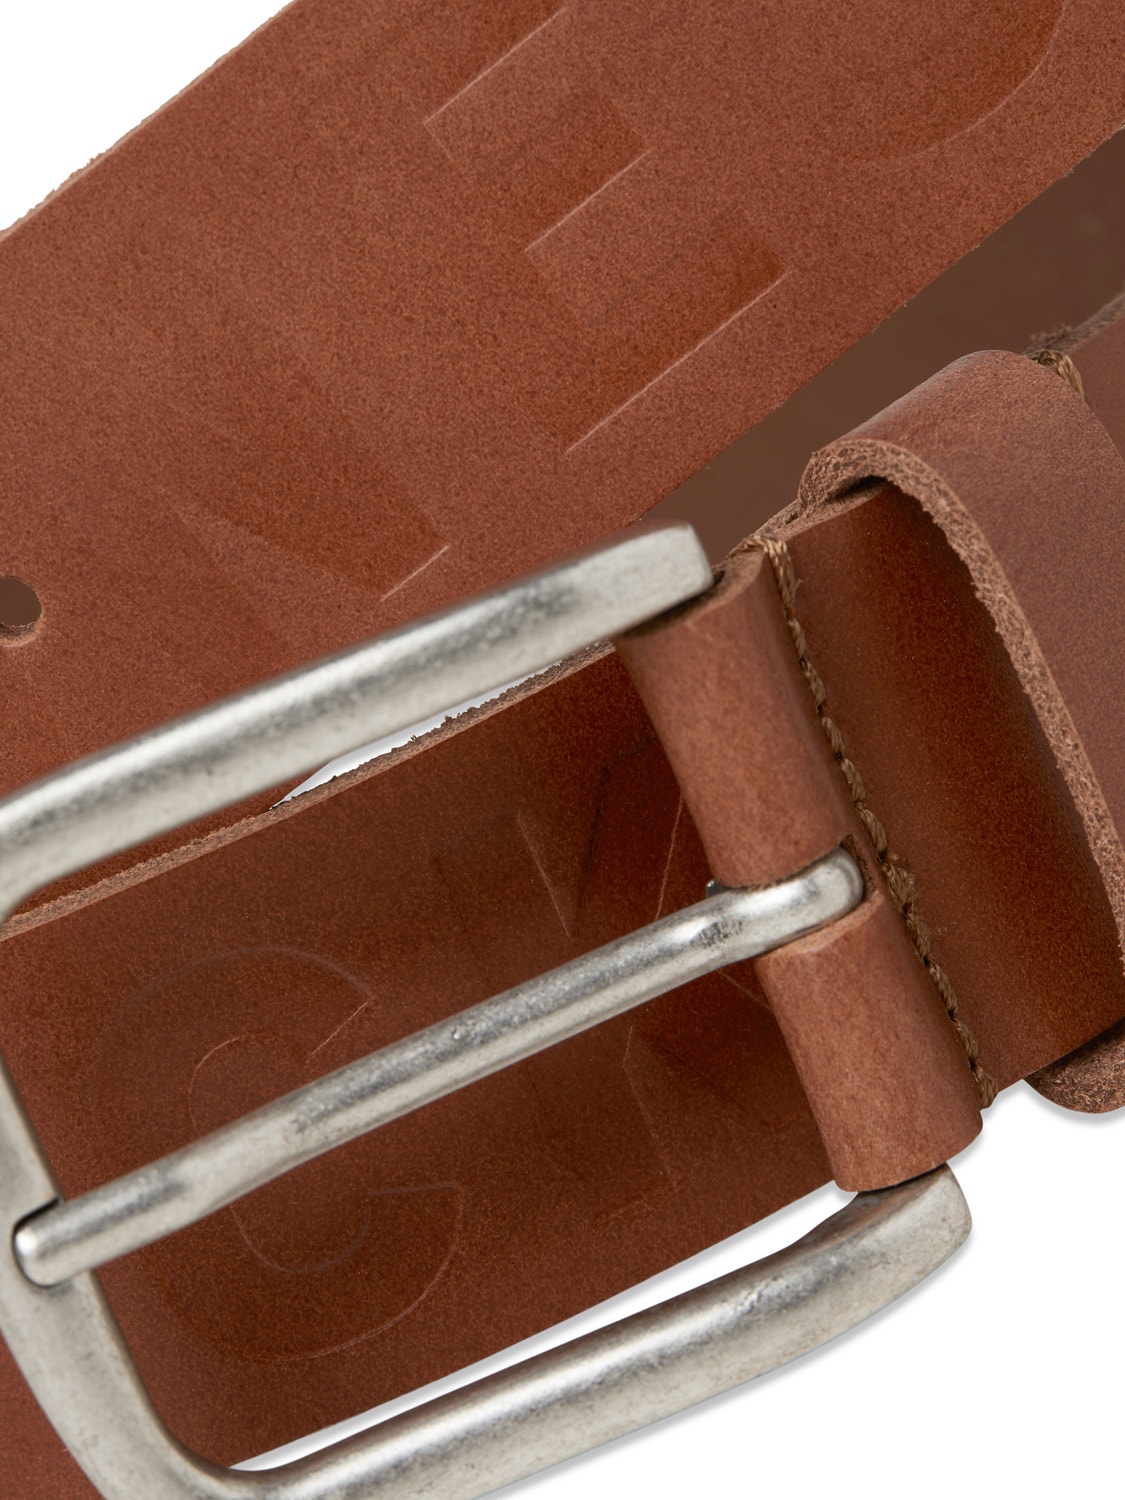 Jack & Jones Leather Belt -Cognac - 12229512